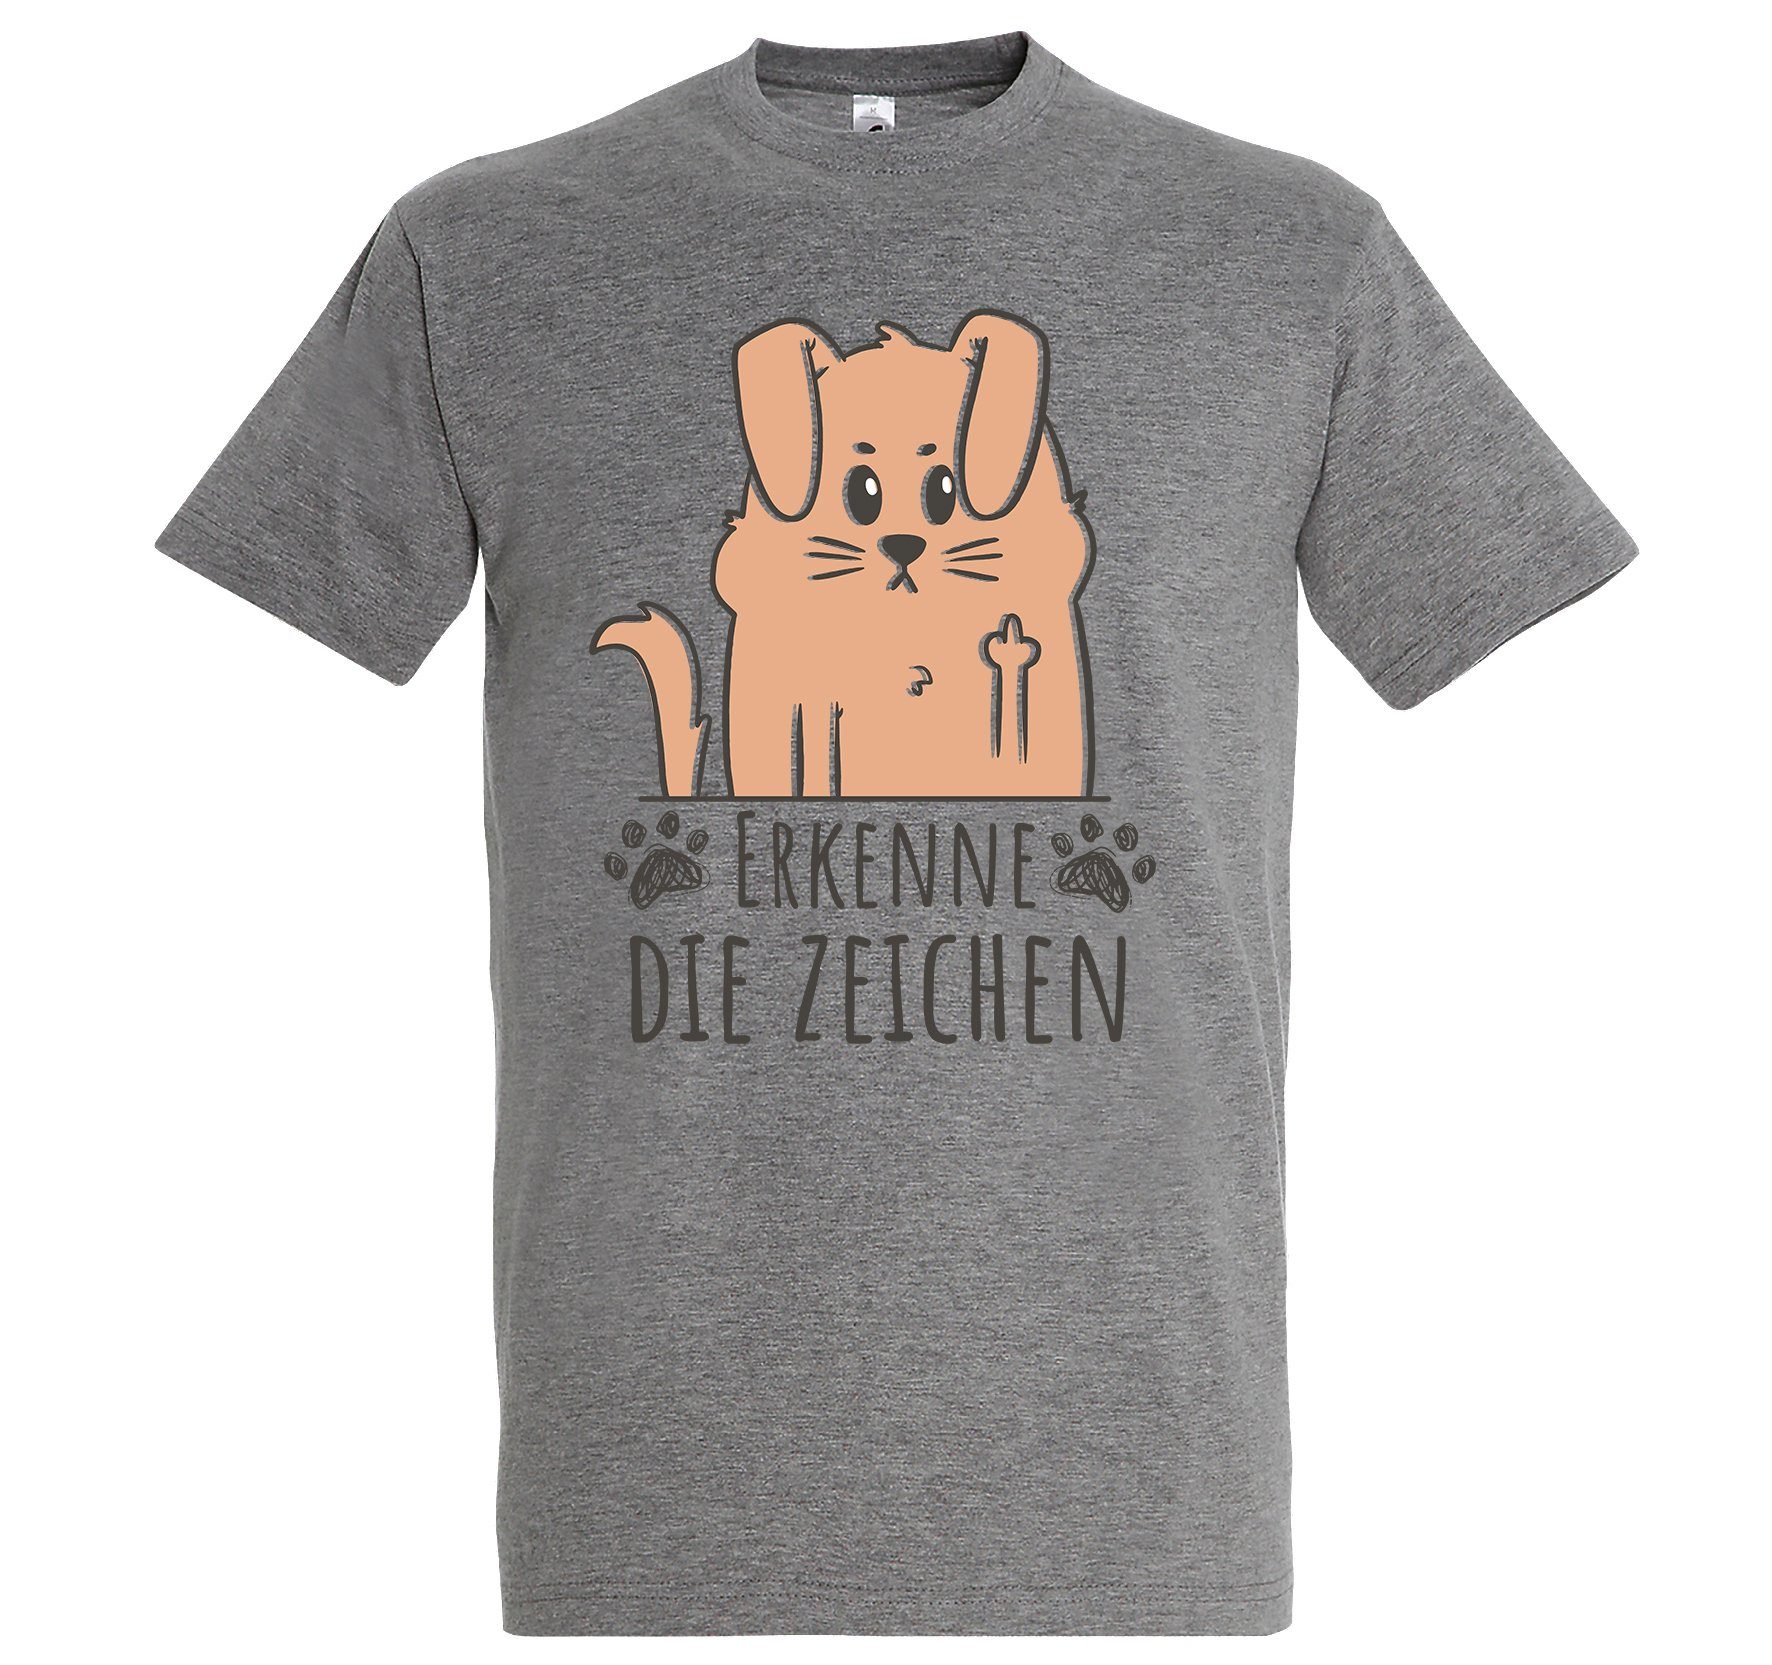 Youth Designz Print-Shirt Erkenne die Zeichen Herren T-Shirt mit lustigem Spruch Aufdruck Grau